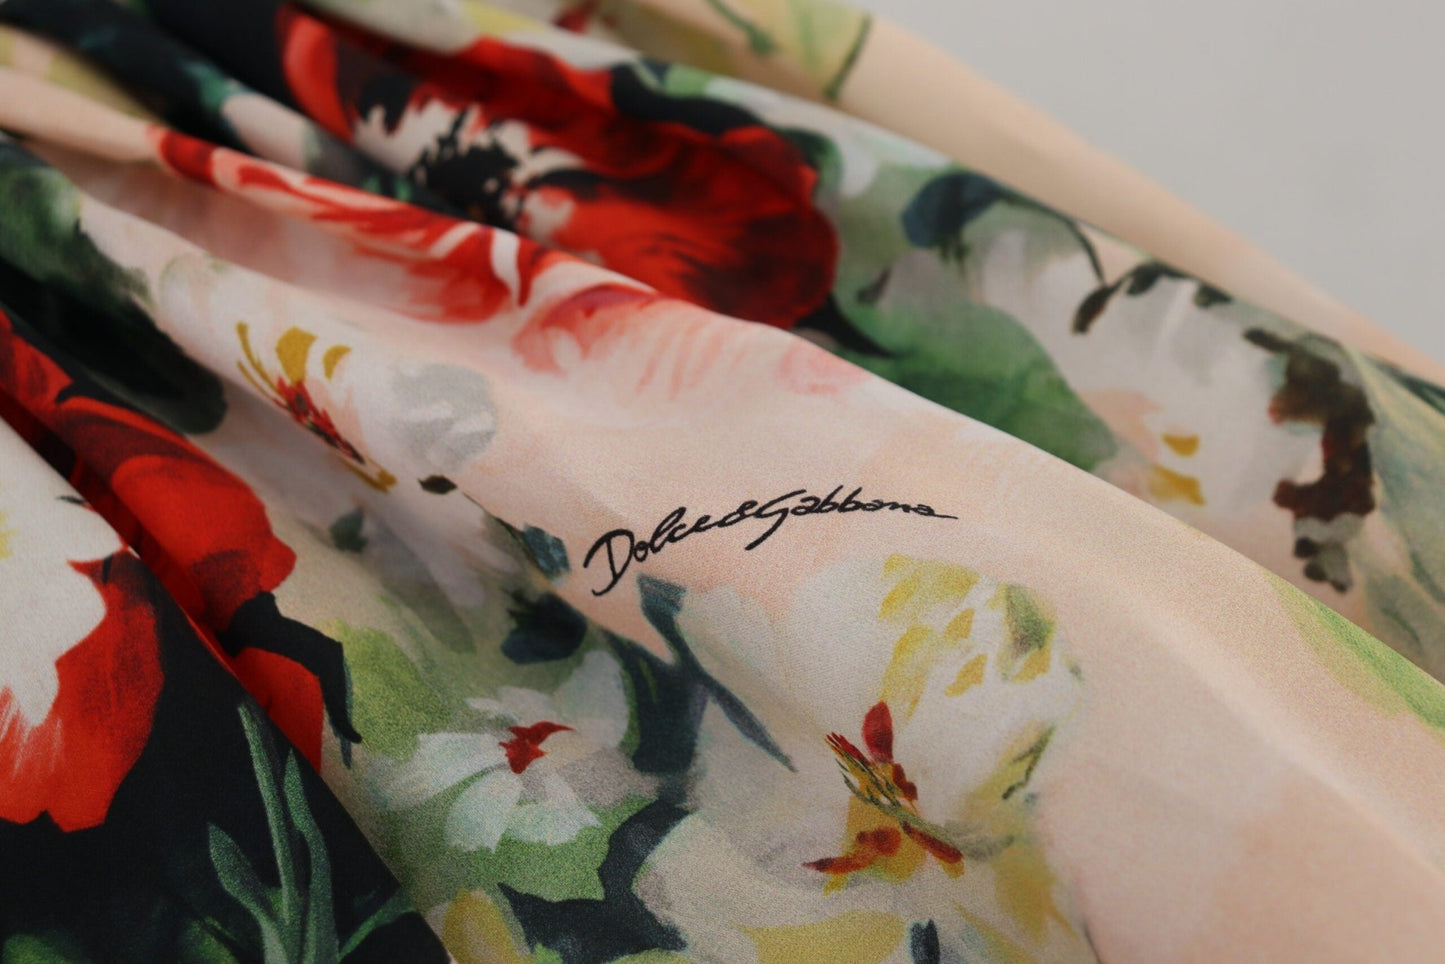 Dolce & Gabbana Exquisite High Waist Floral Silk Skirt